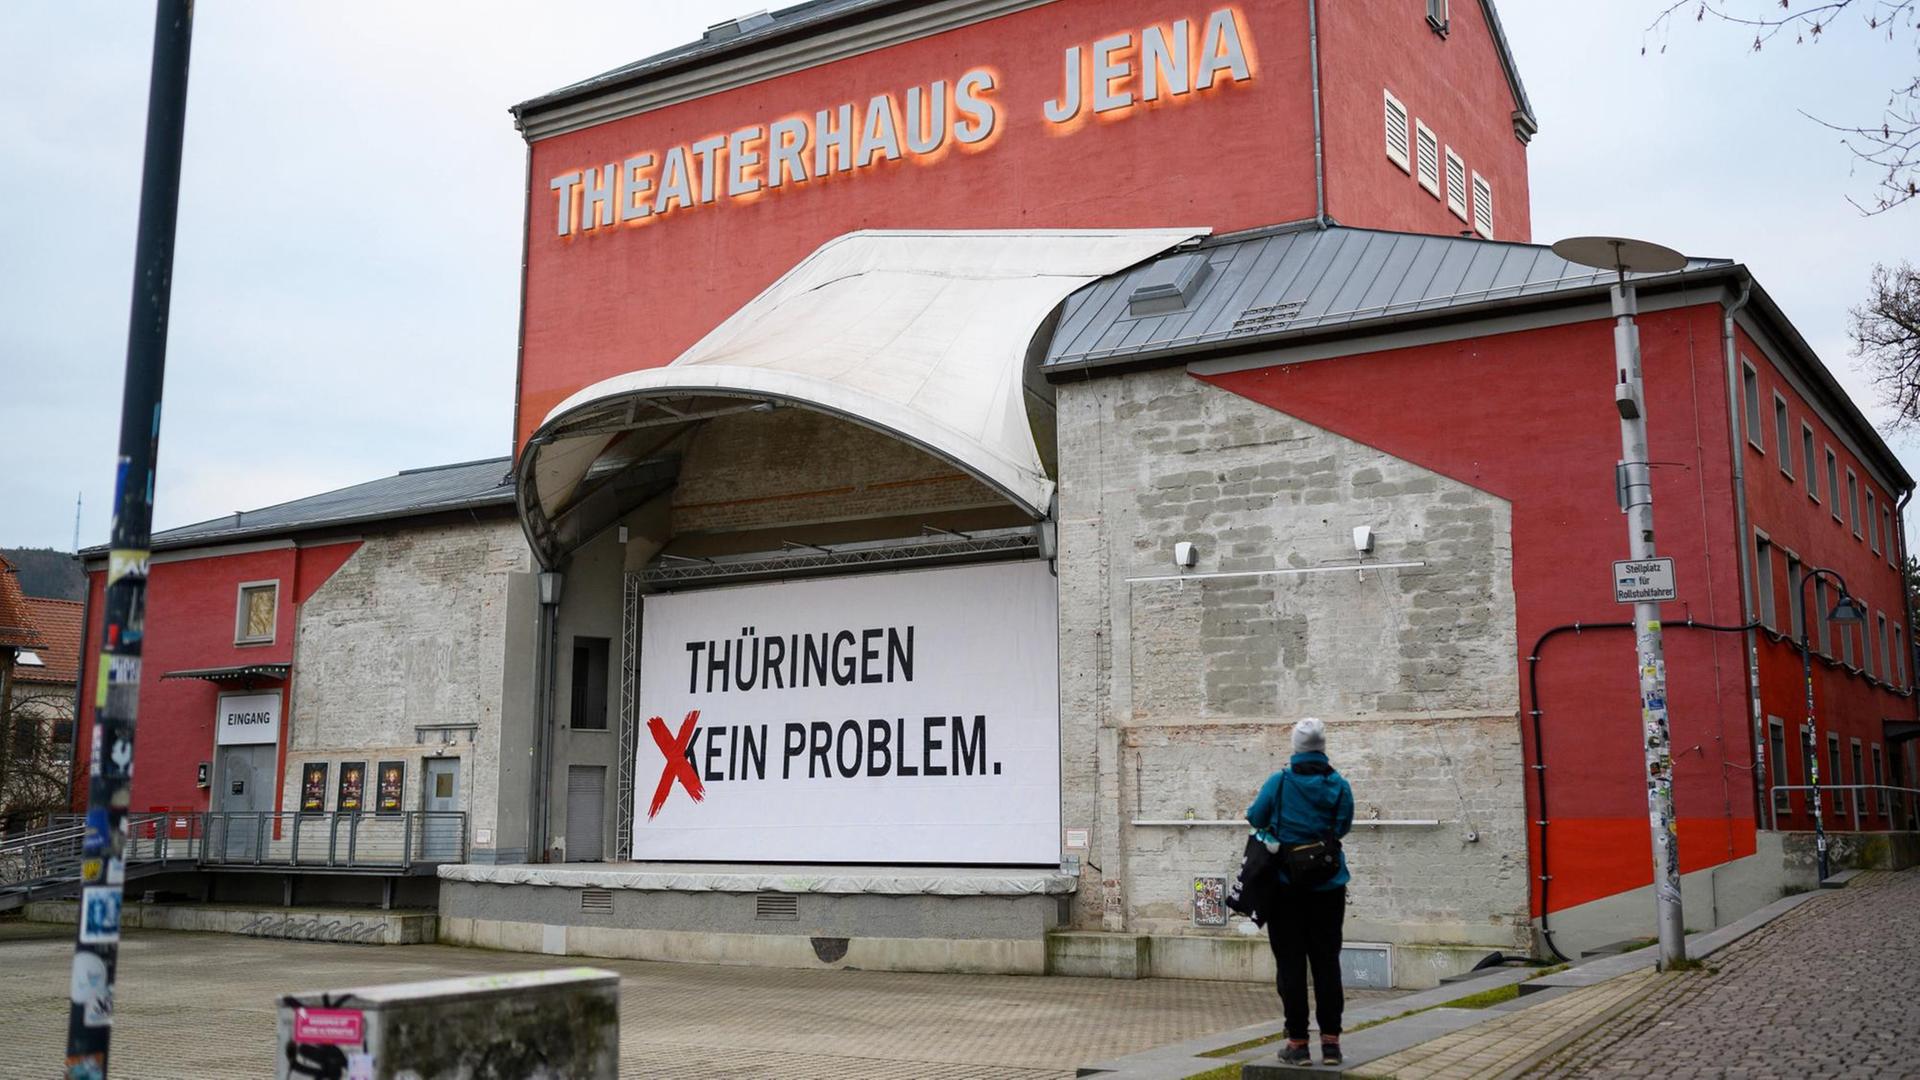 Das Theaterhaus Jena hat die Aufschrift "Thüringen - kein Problem" zu "Thüringen - ein Problem" geändert.